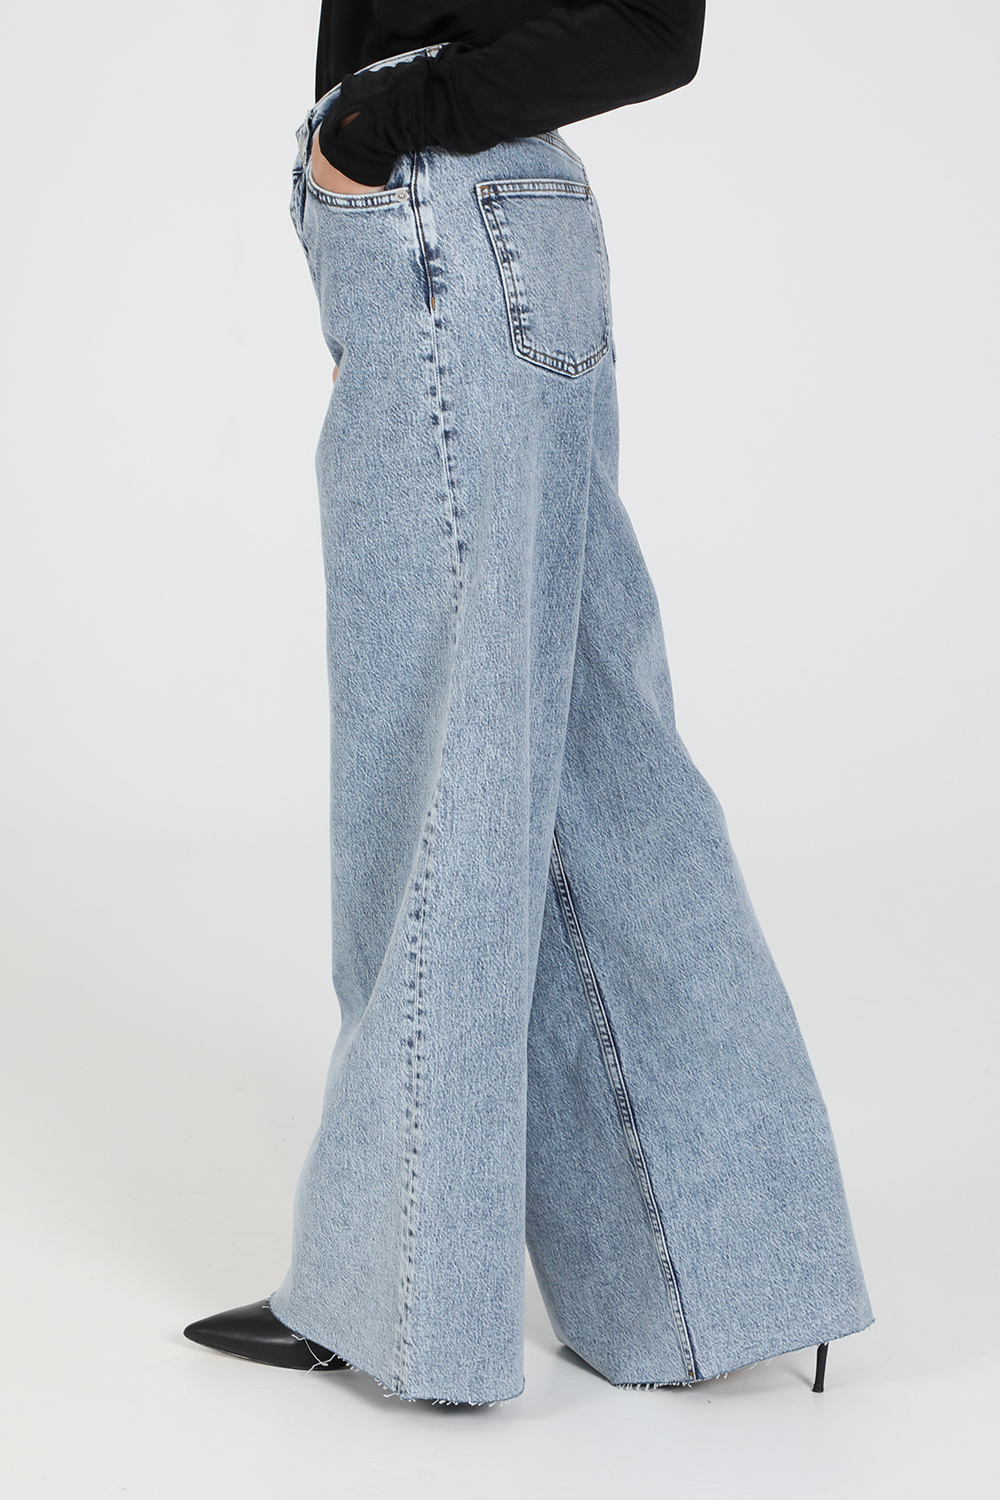 Γυναικεία/Ρούχα/Παντελόνια/Jean NA-KD - Γυναικείο jean παντελόνι NA-KD μπλε